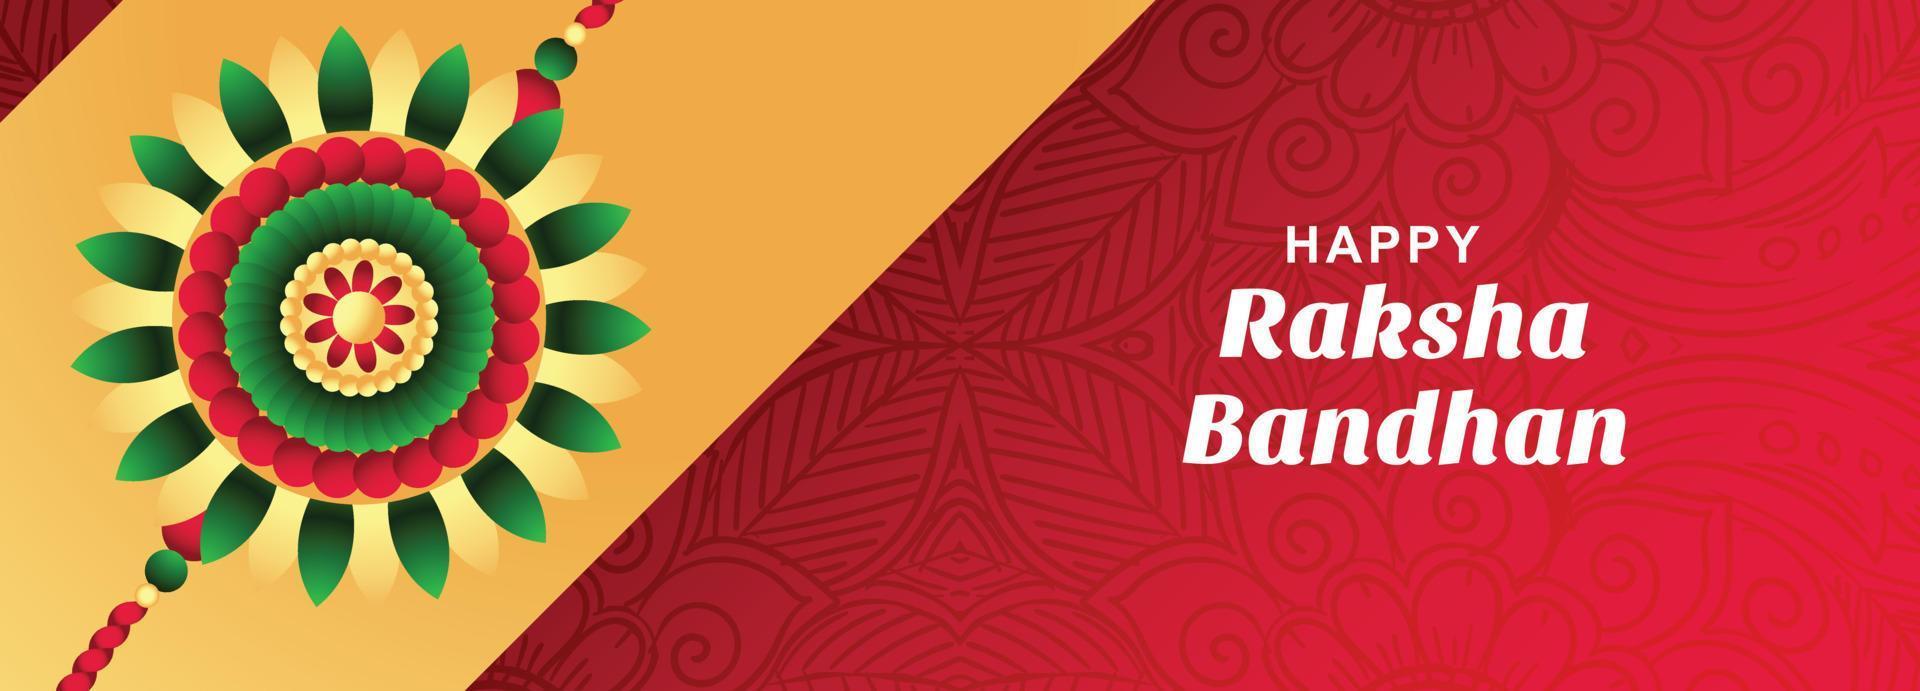 cartão festival raksha bandhan com design de banner rakhi vetor